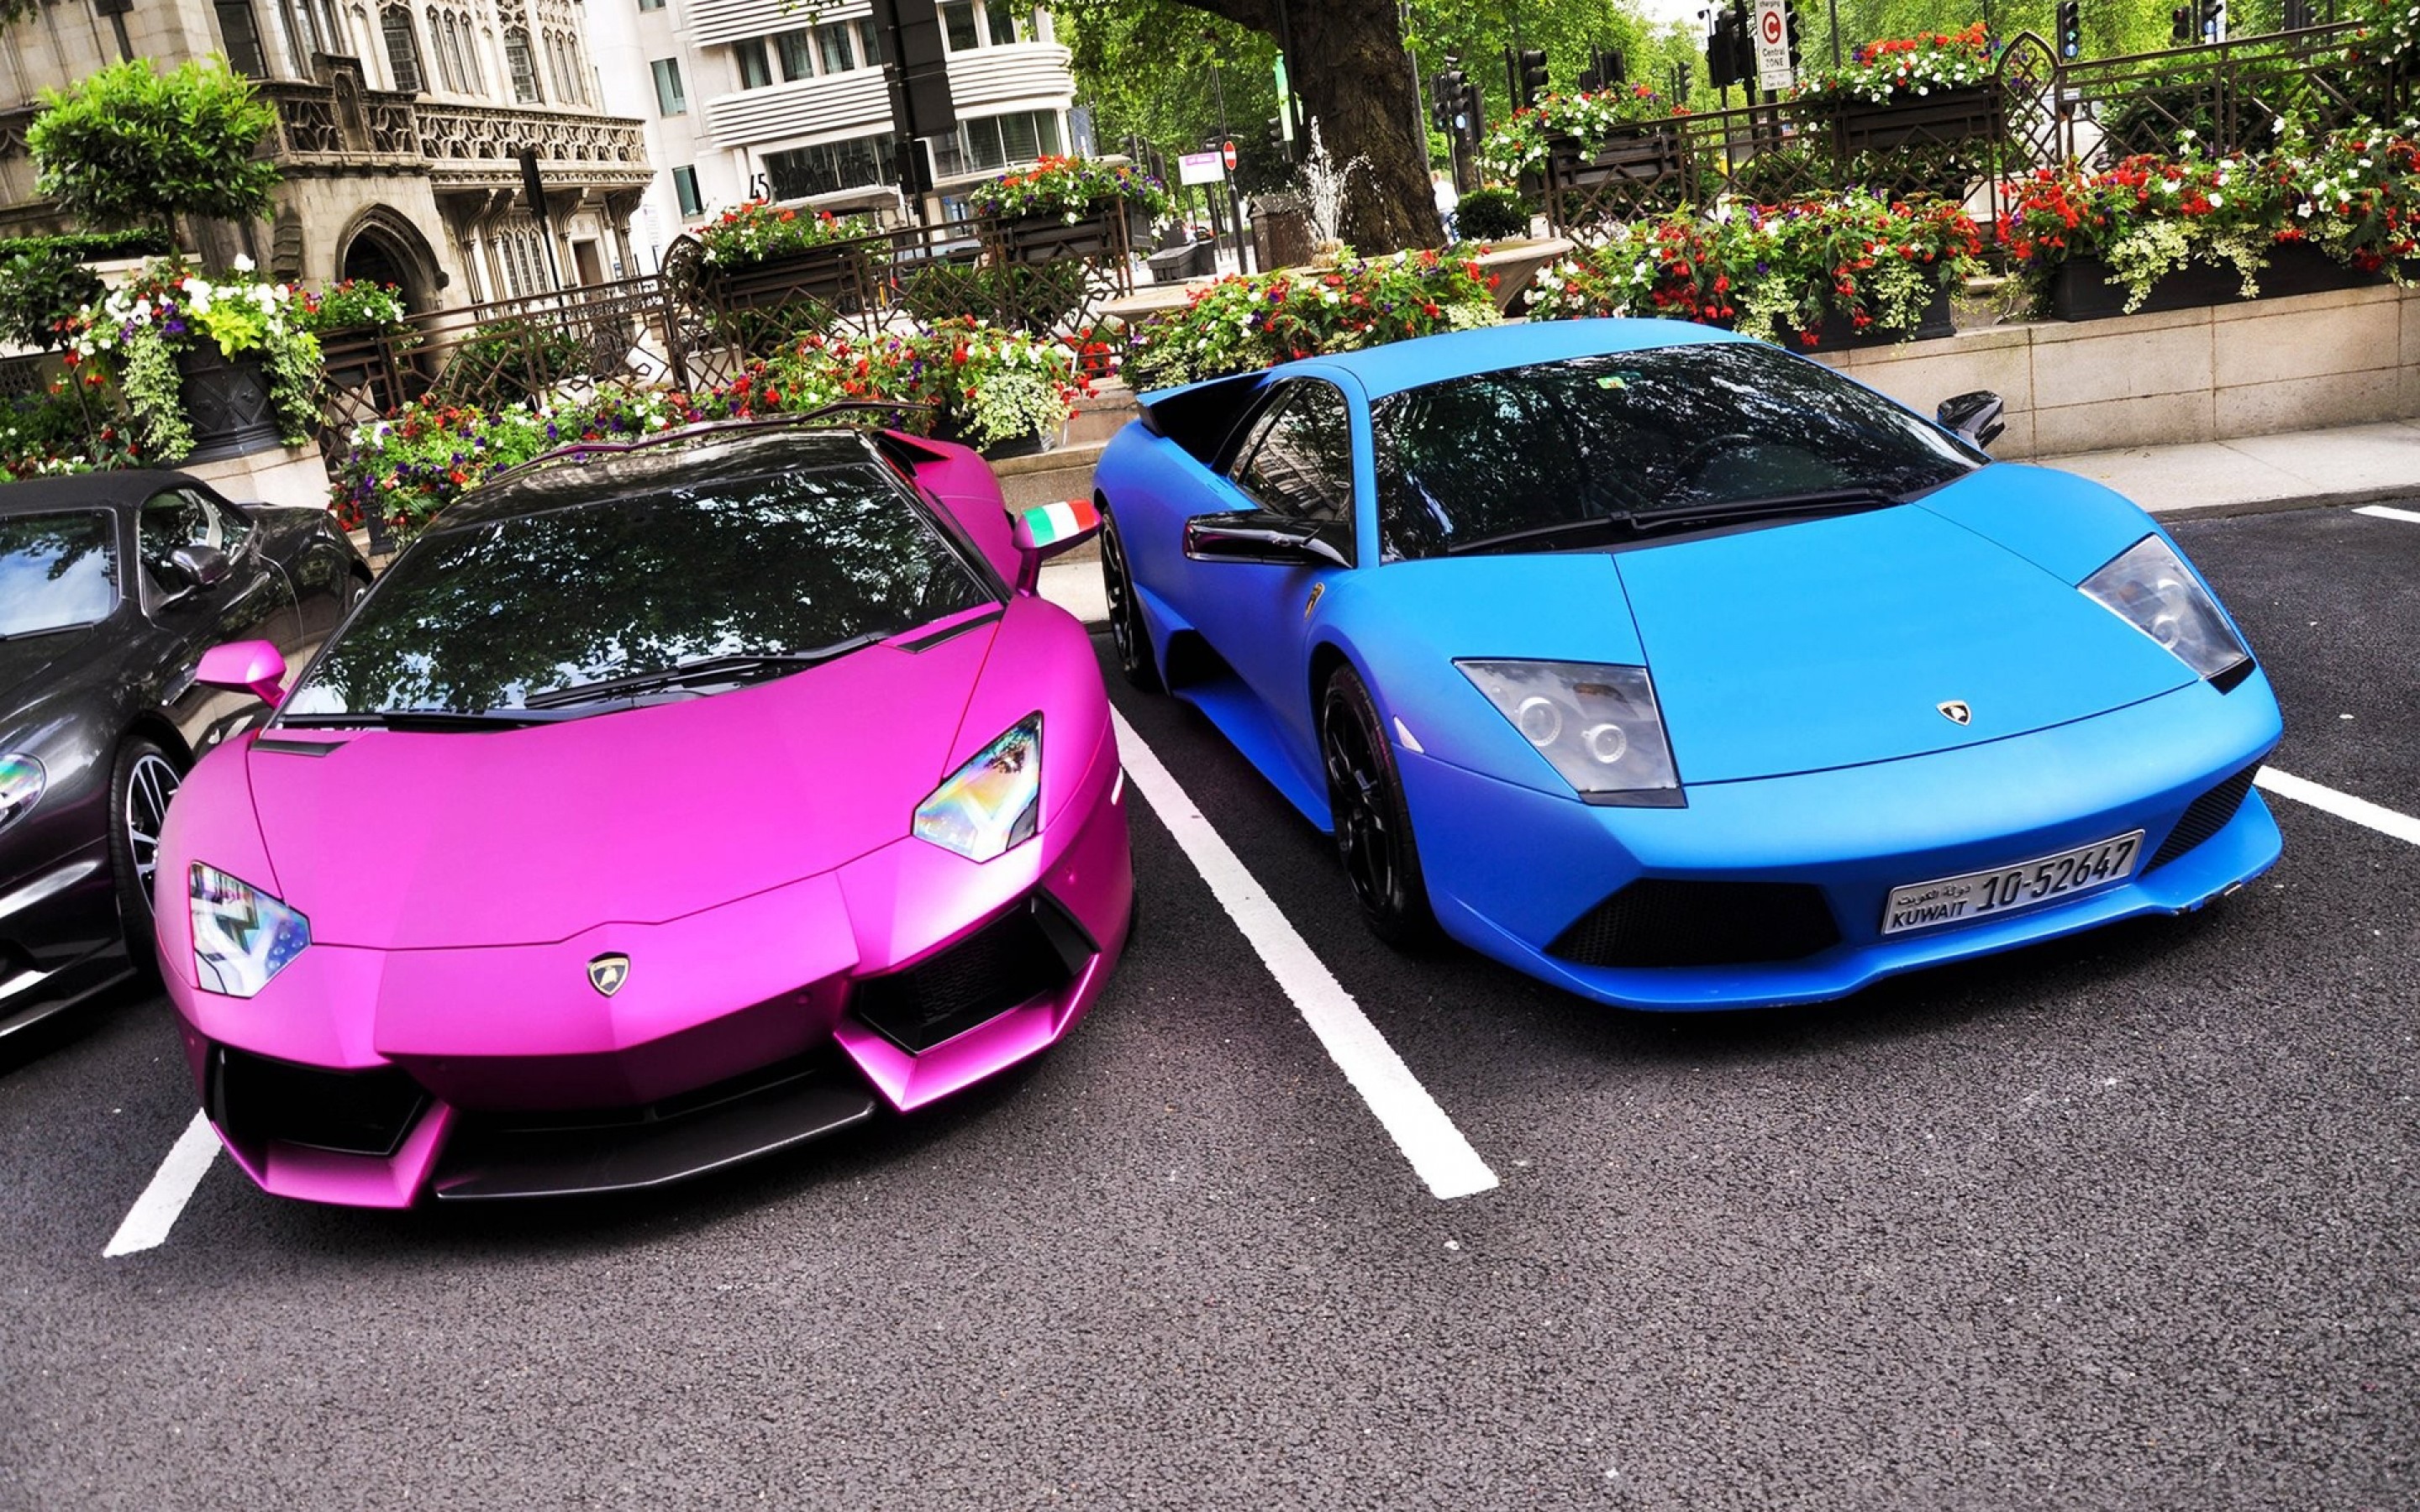 Видео машин цвета. Lamborghini Aventador lp700 розовый. Lamborghini Aventador lp700-4 розовая. Ламборджини Мурселаго розовая. Lamborghini Aventador lp700-4 синяя.